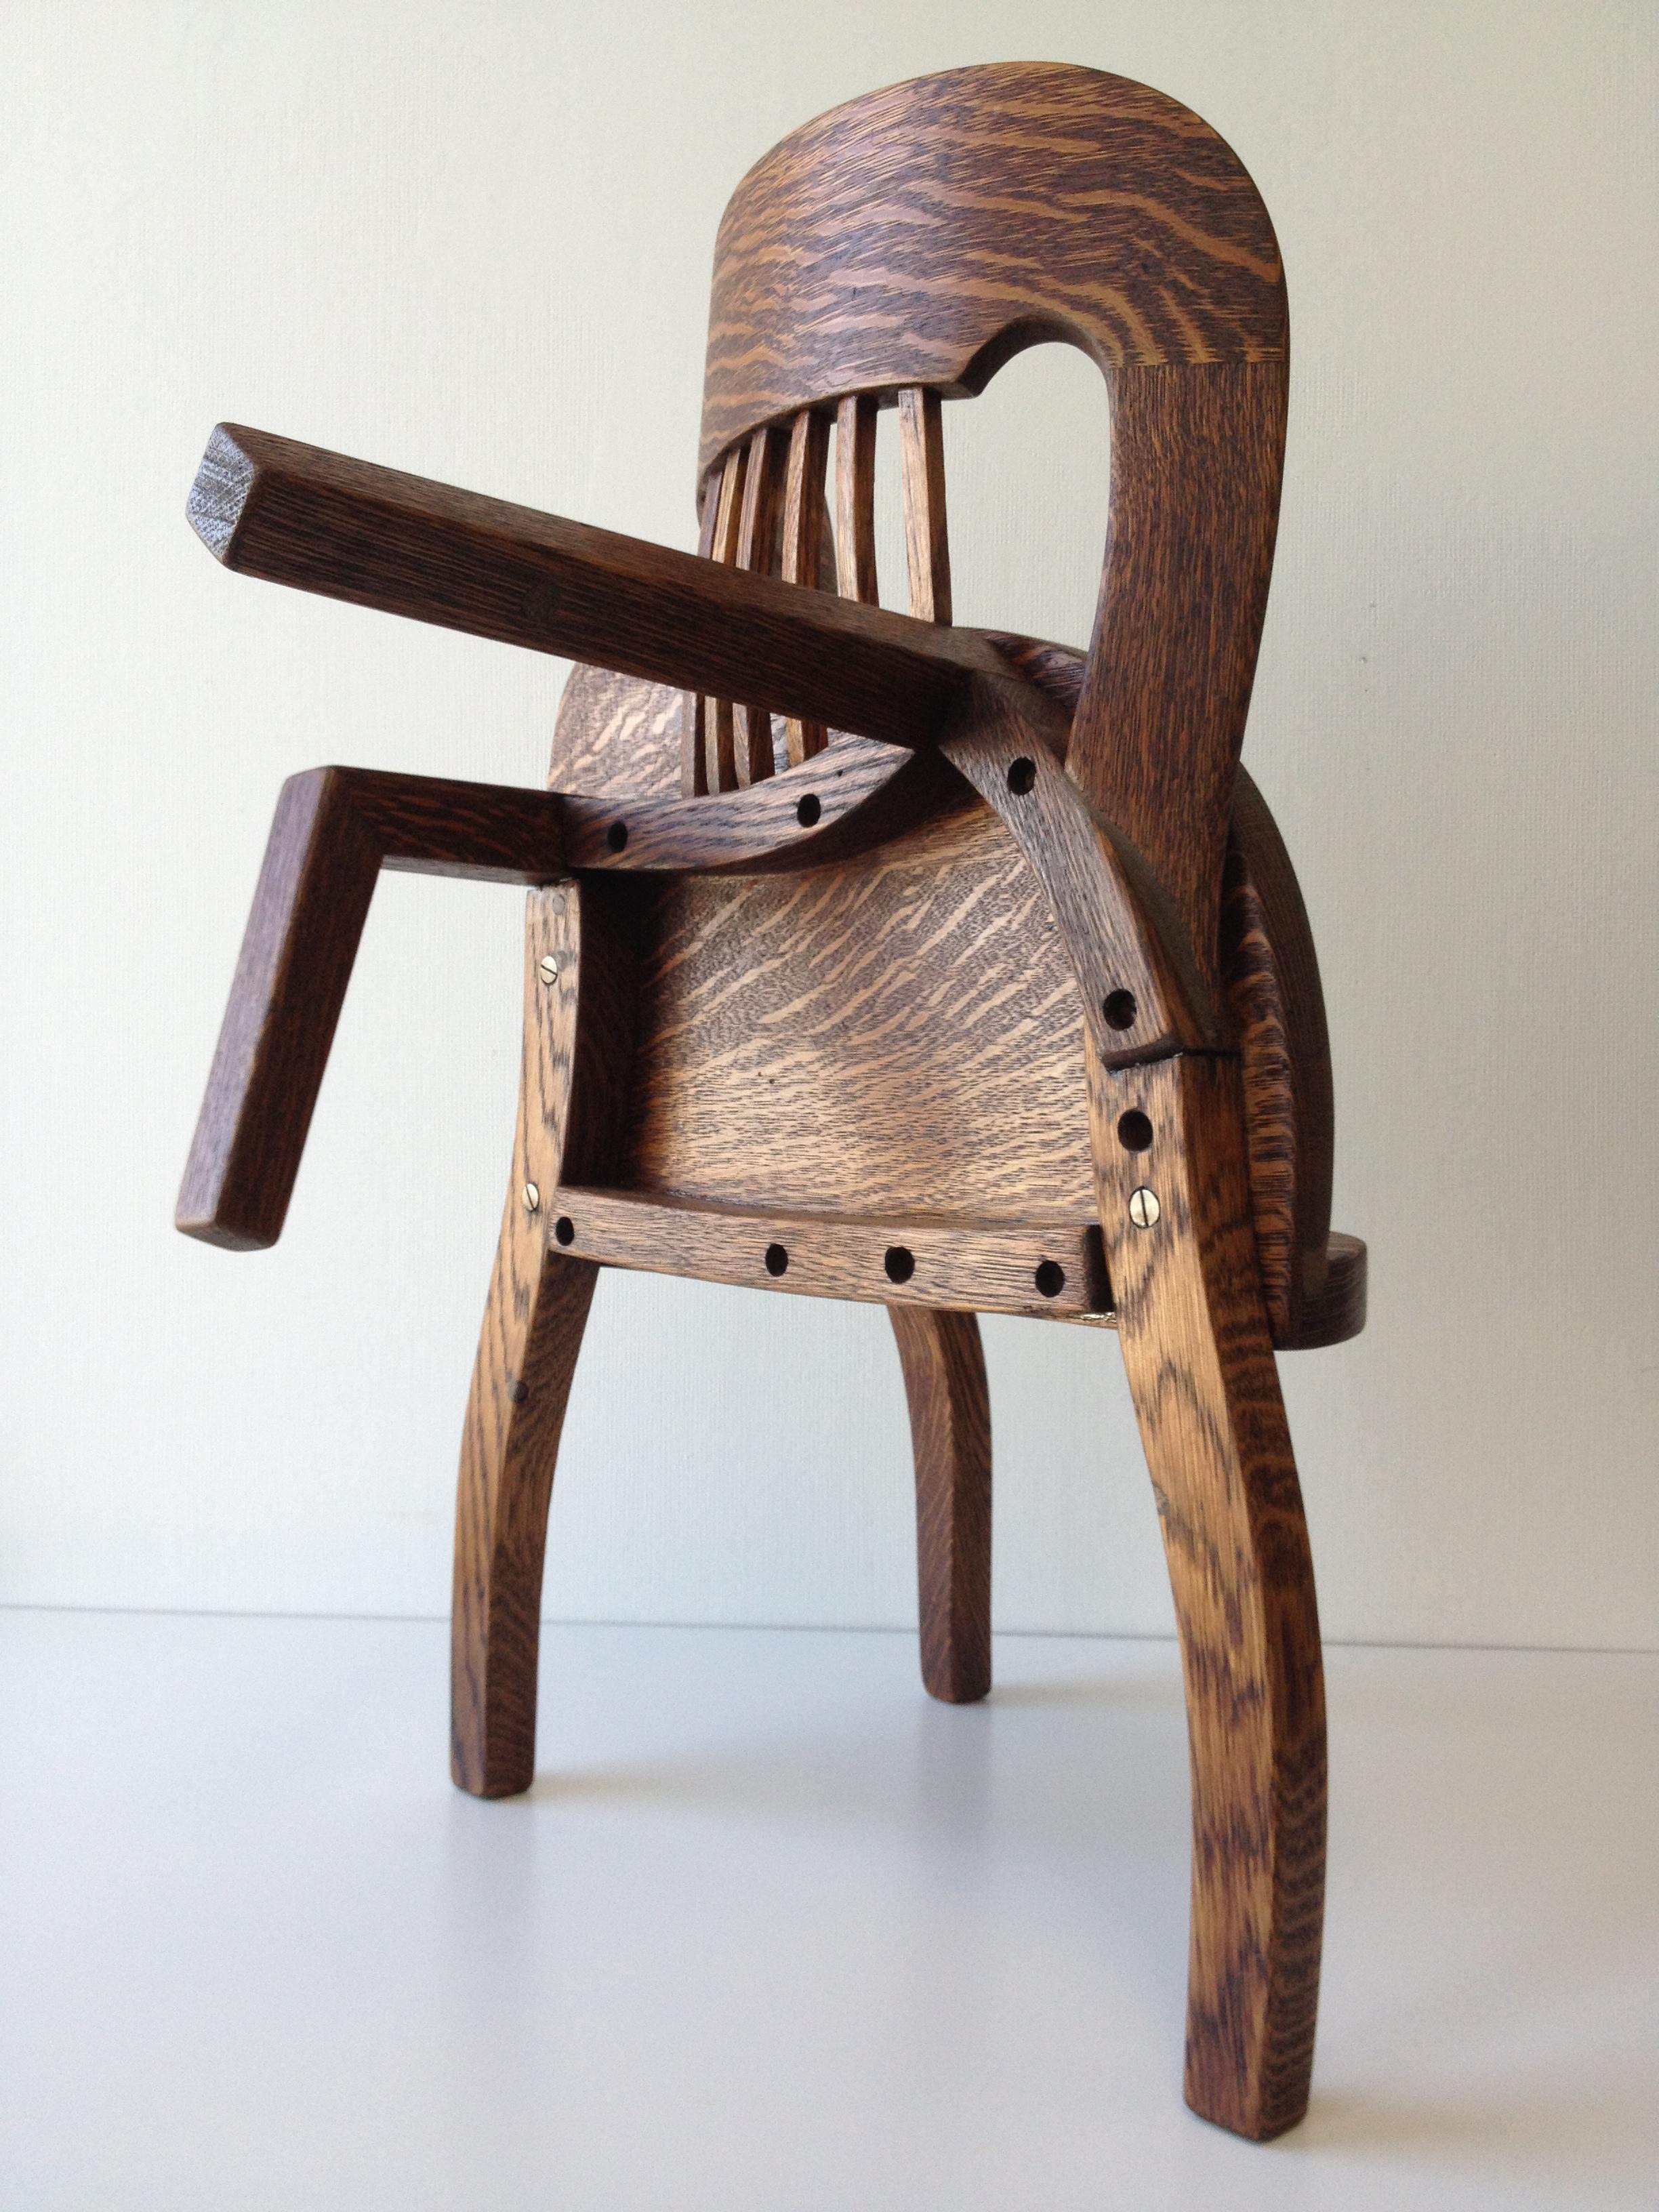 Michael Kesselman Still-Life Sculpture - Chair no. 92 (jury chair reconstructed: sculpture)